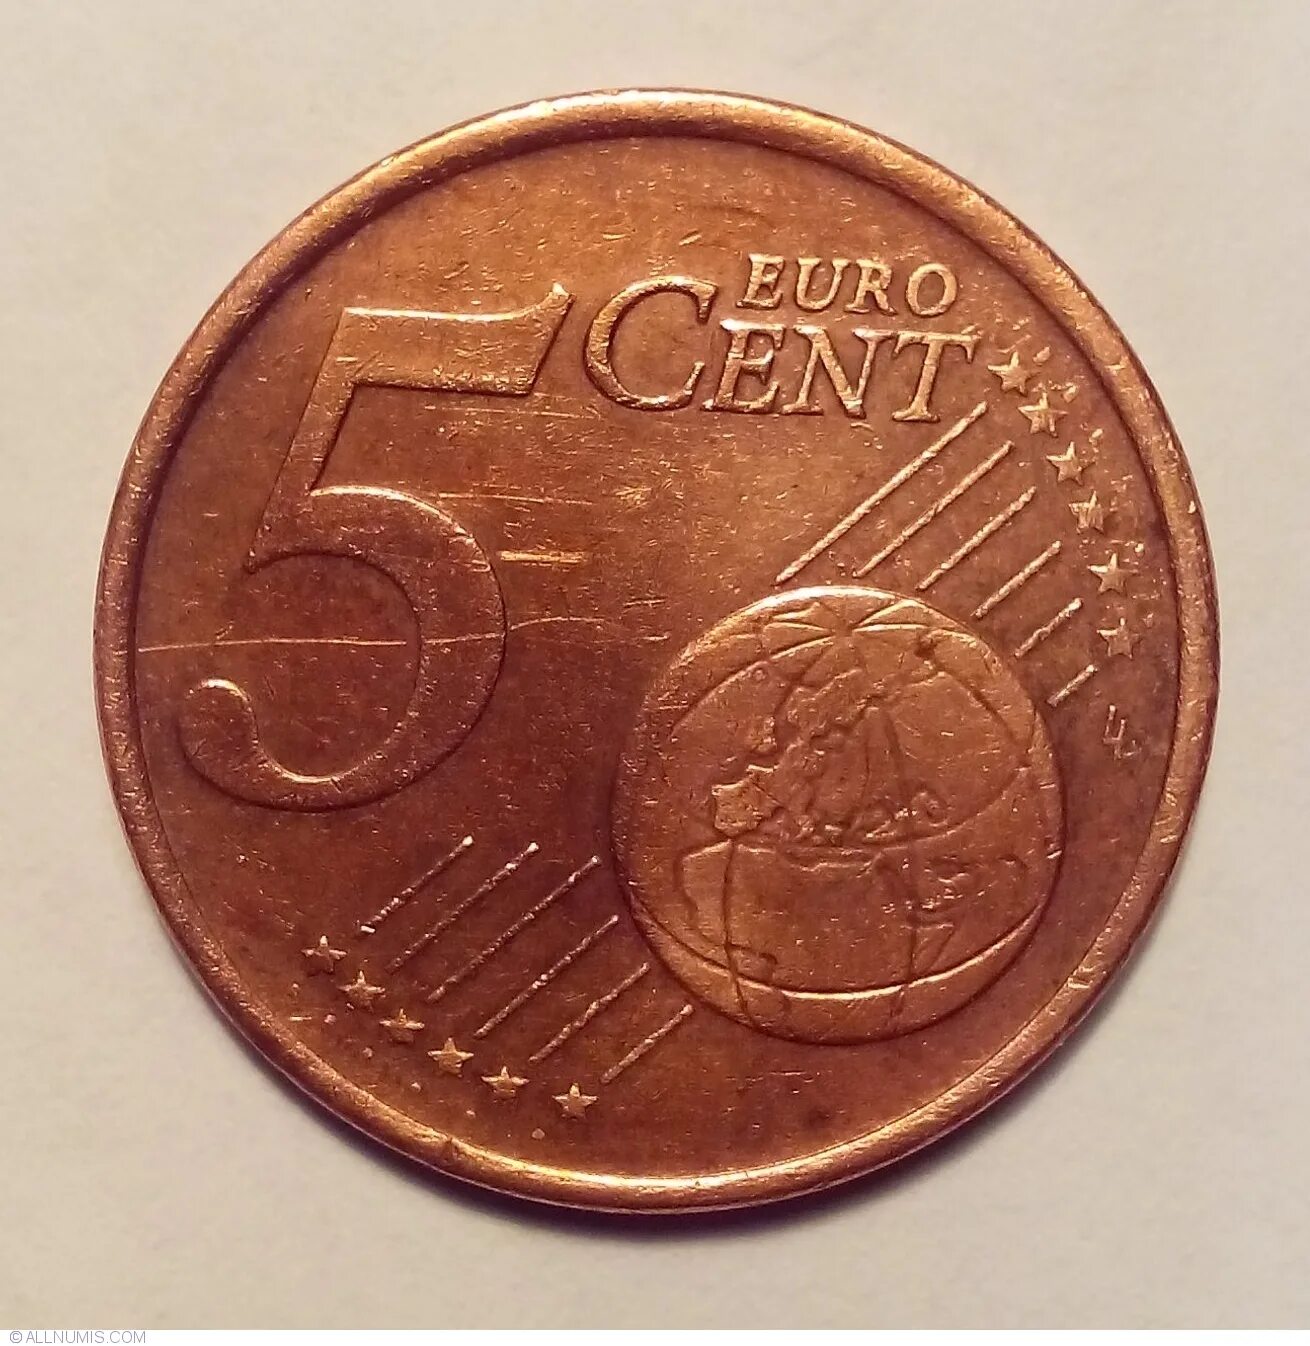 Центы в рубли. 5 Euro Cent 2002. 5 Евро цент. 2 Euro Cent 2002. Пять евроцентов в рублях.